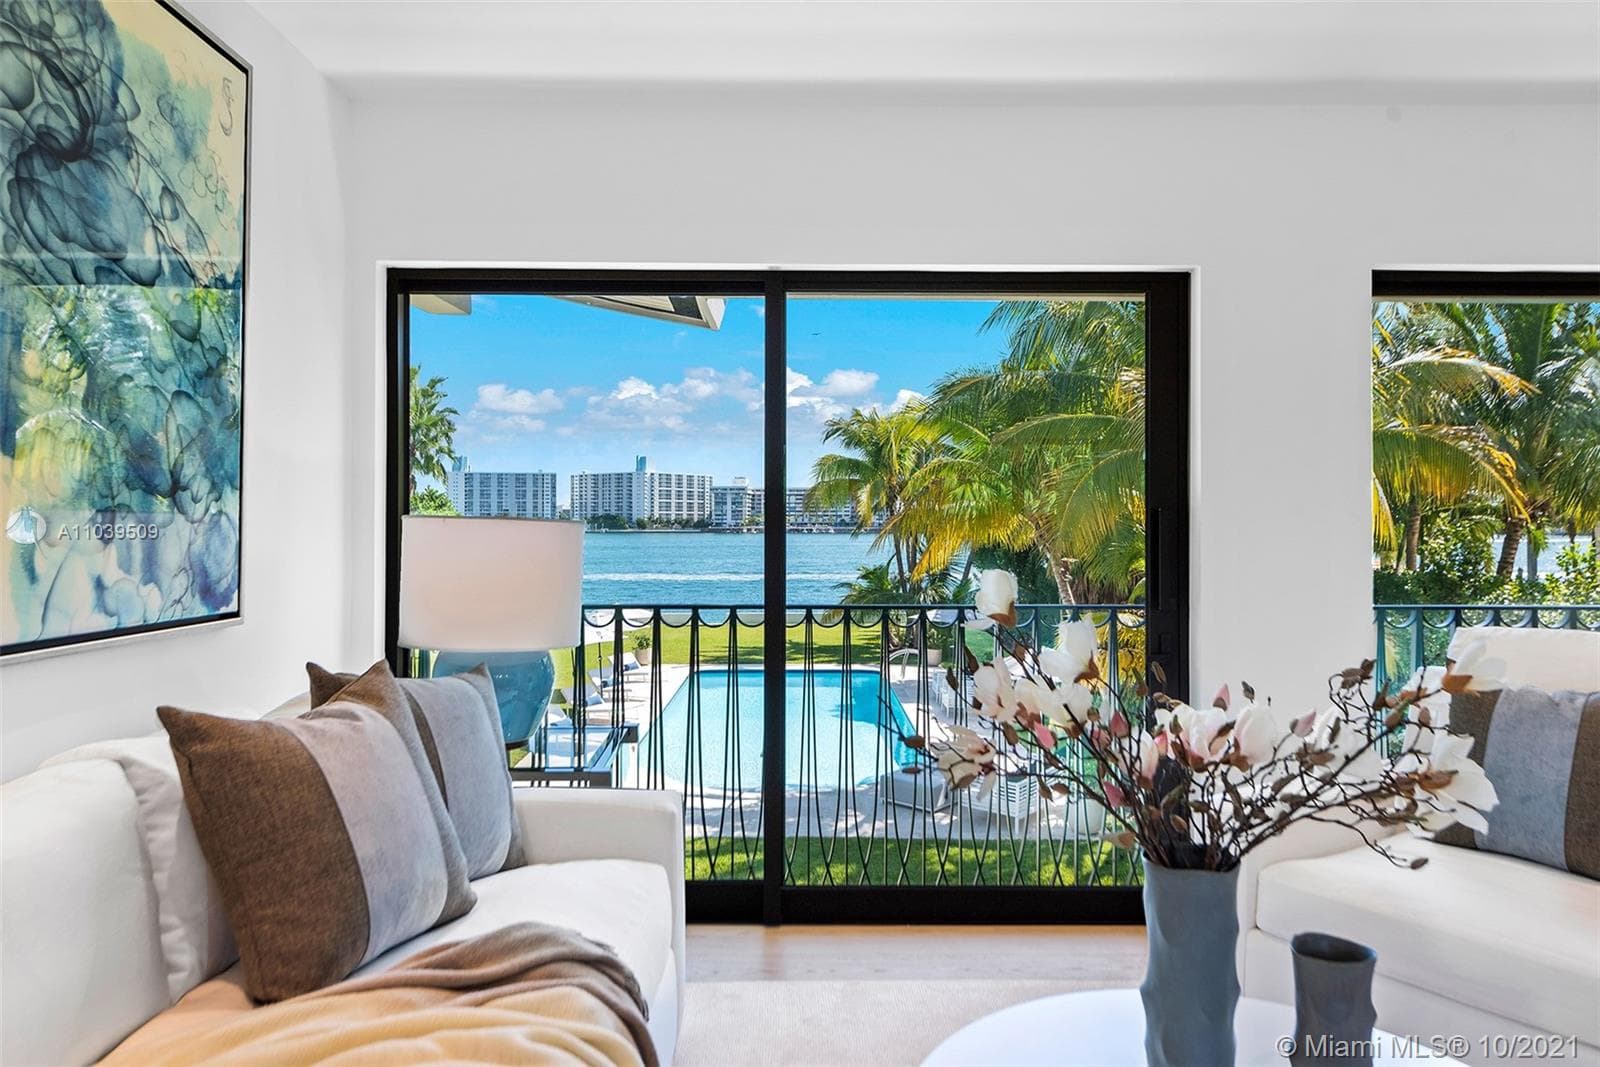 9 Bedroom Condominium For Sale Miami Beach Lp09826 46c37f168c04a40.jpg